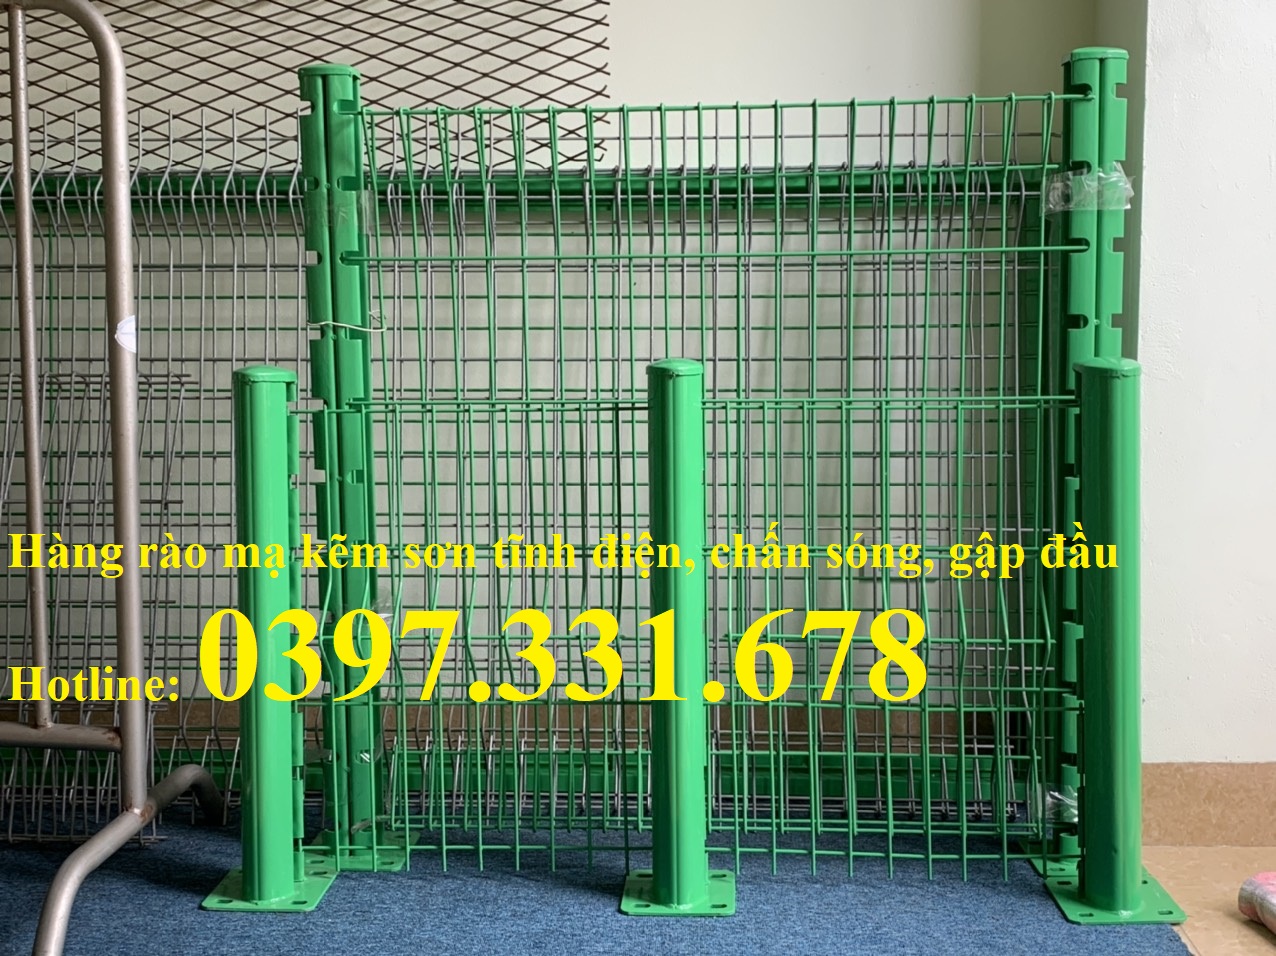 Hàng rào lưới thép, hàng rào lưới thép sơn tĩnh điện phi 5 ô 50x100 sản xuất theo yêu cầu